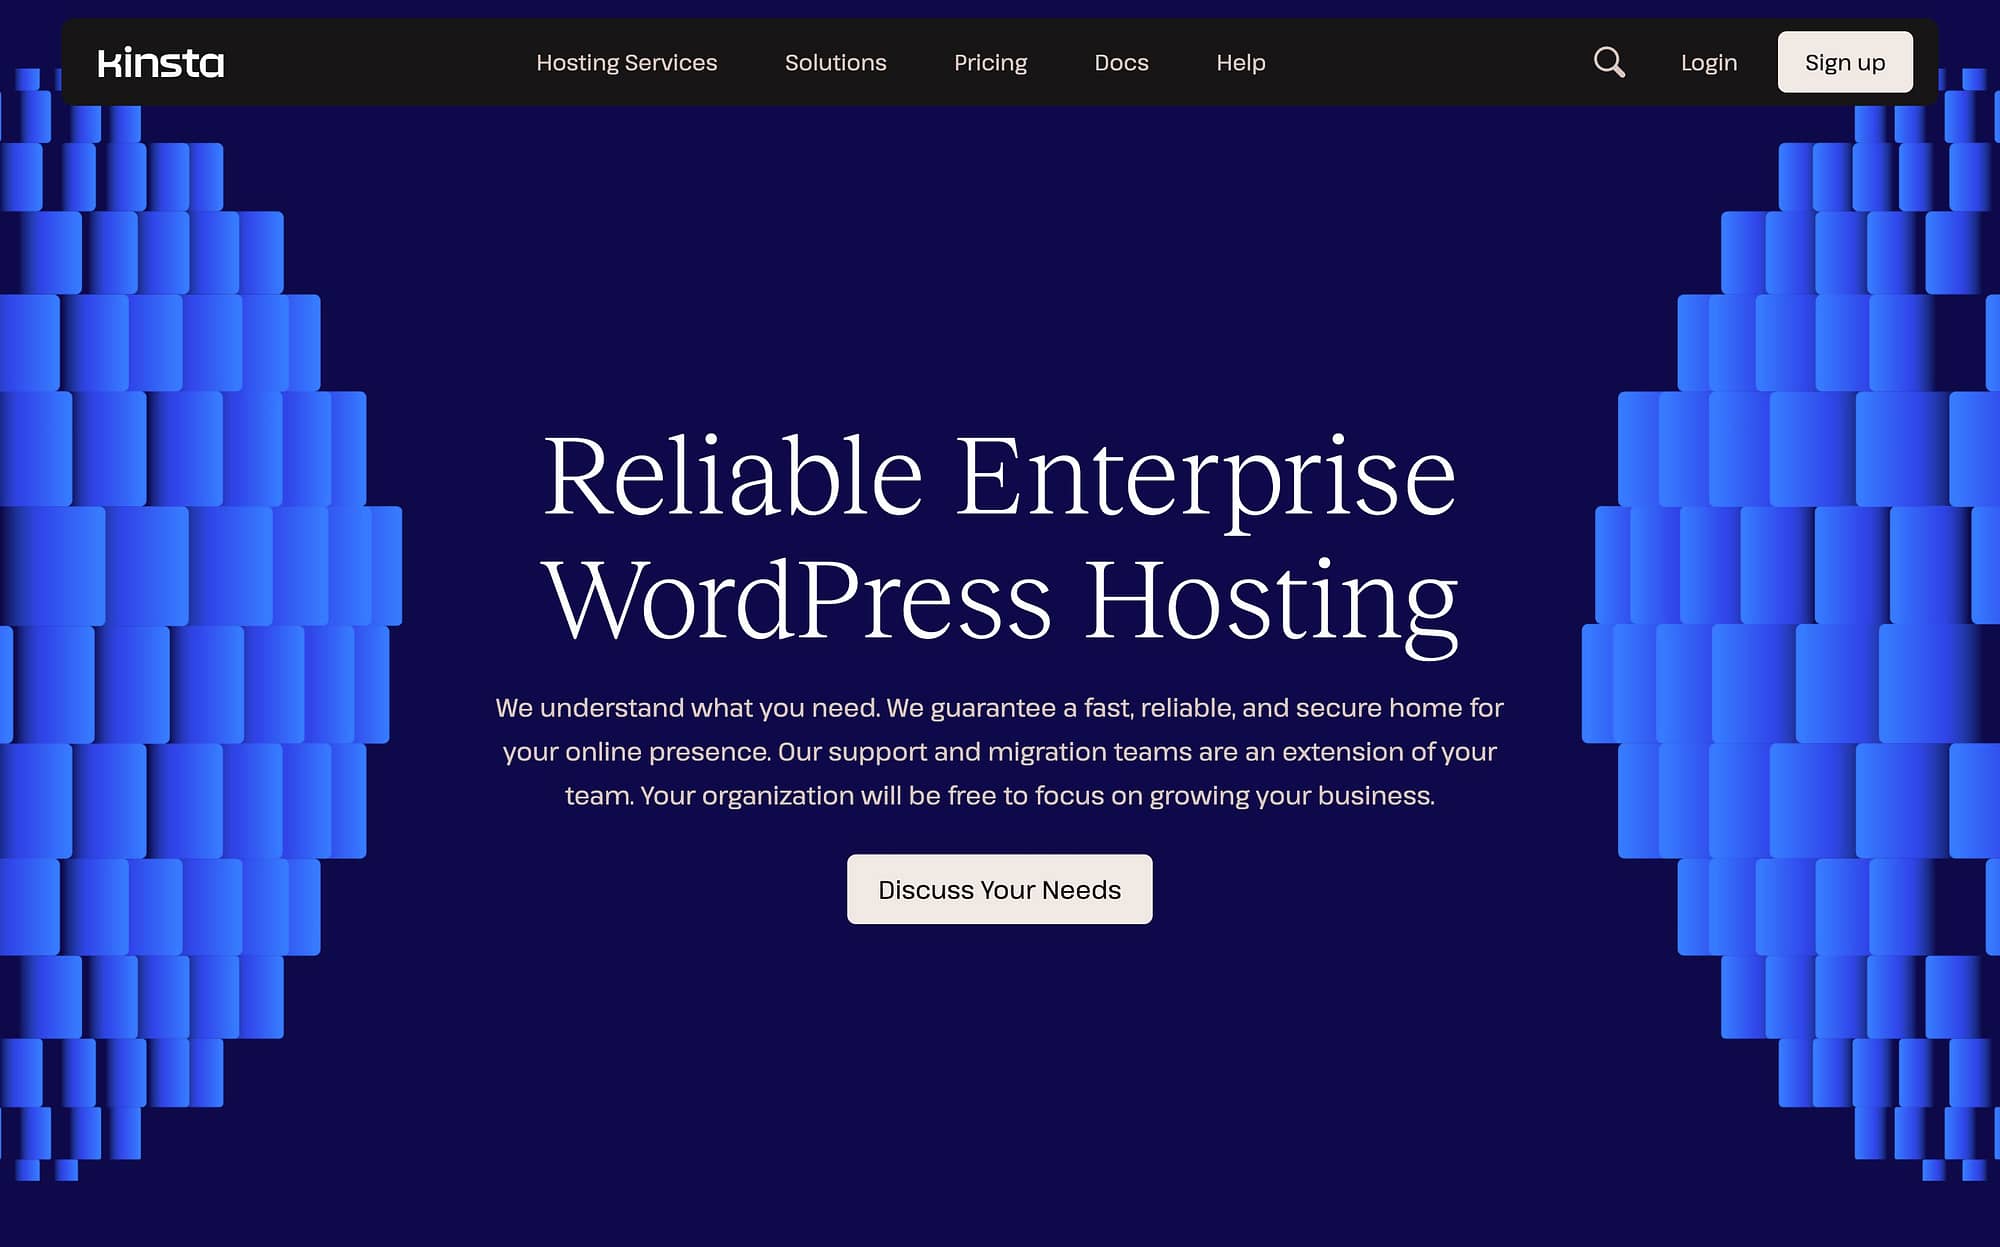 Kinsta is one of the best enterprise WordPress hosting providers.